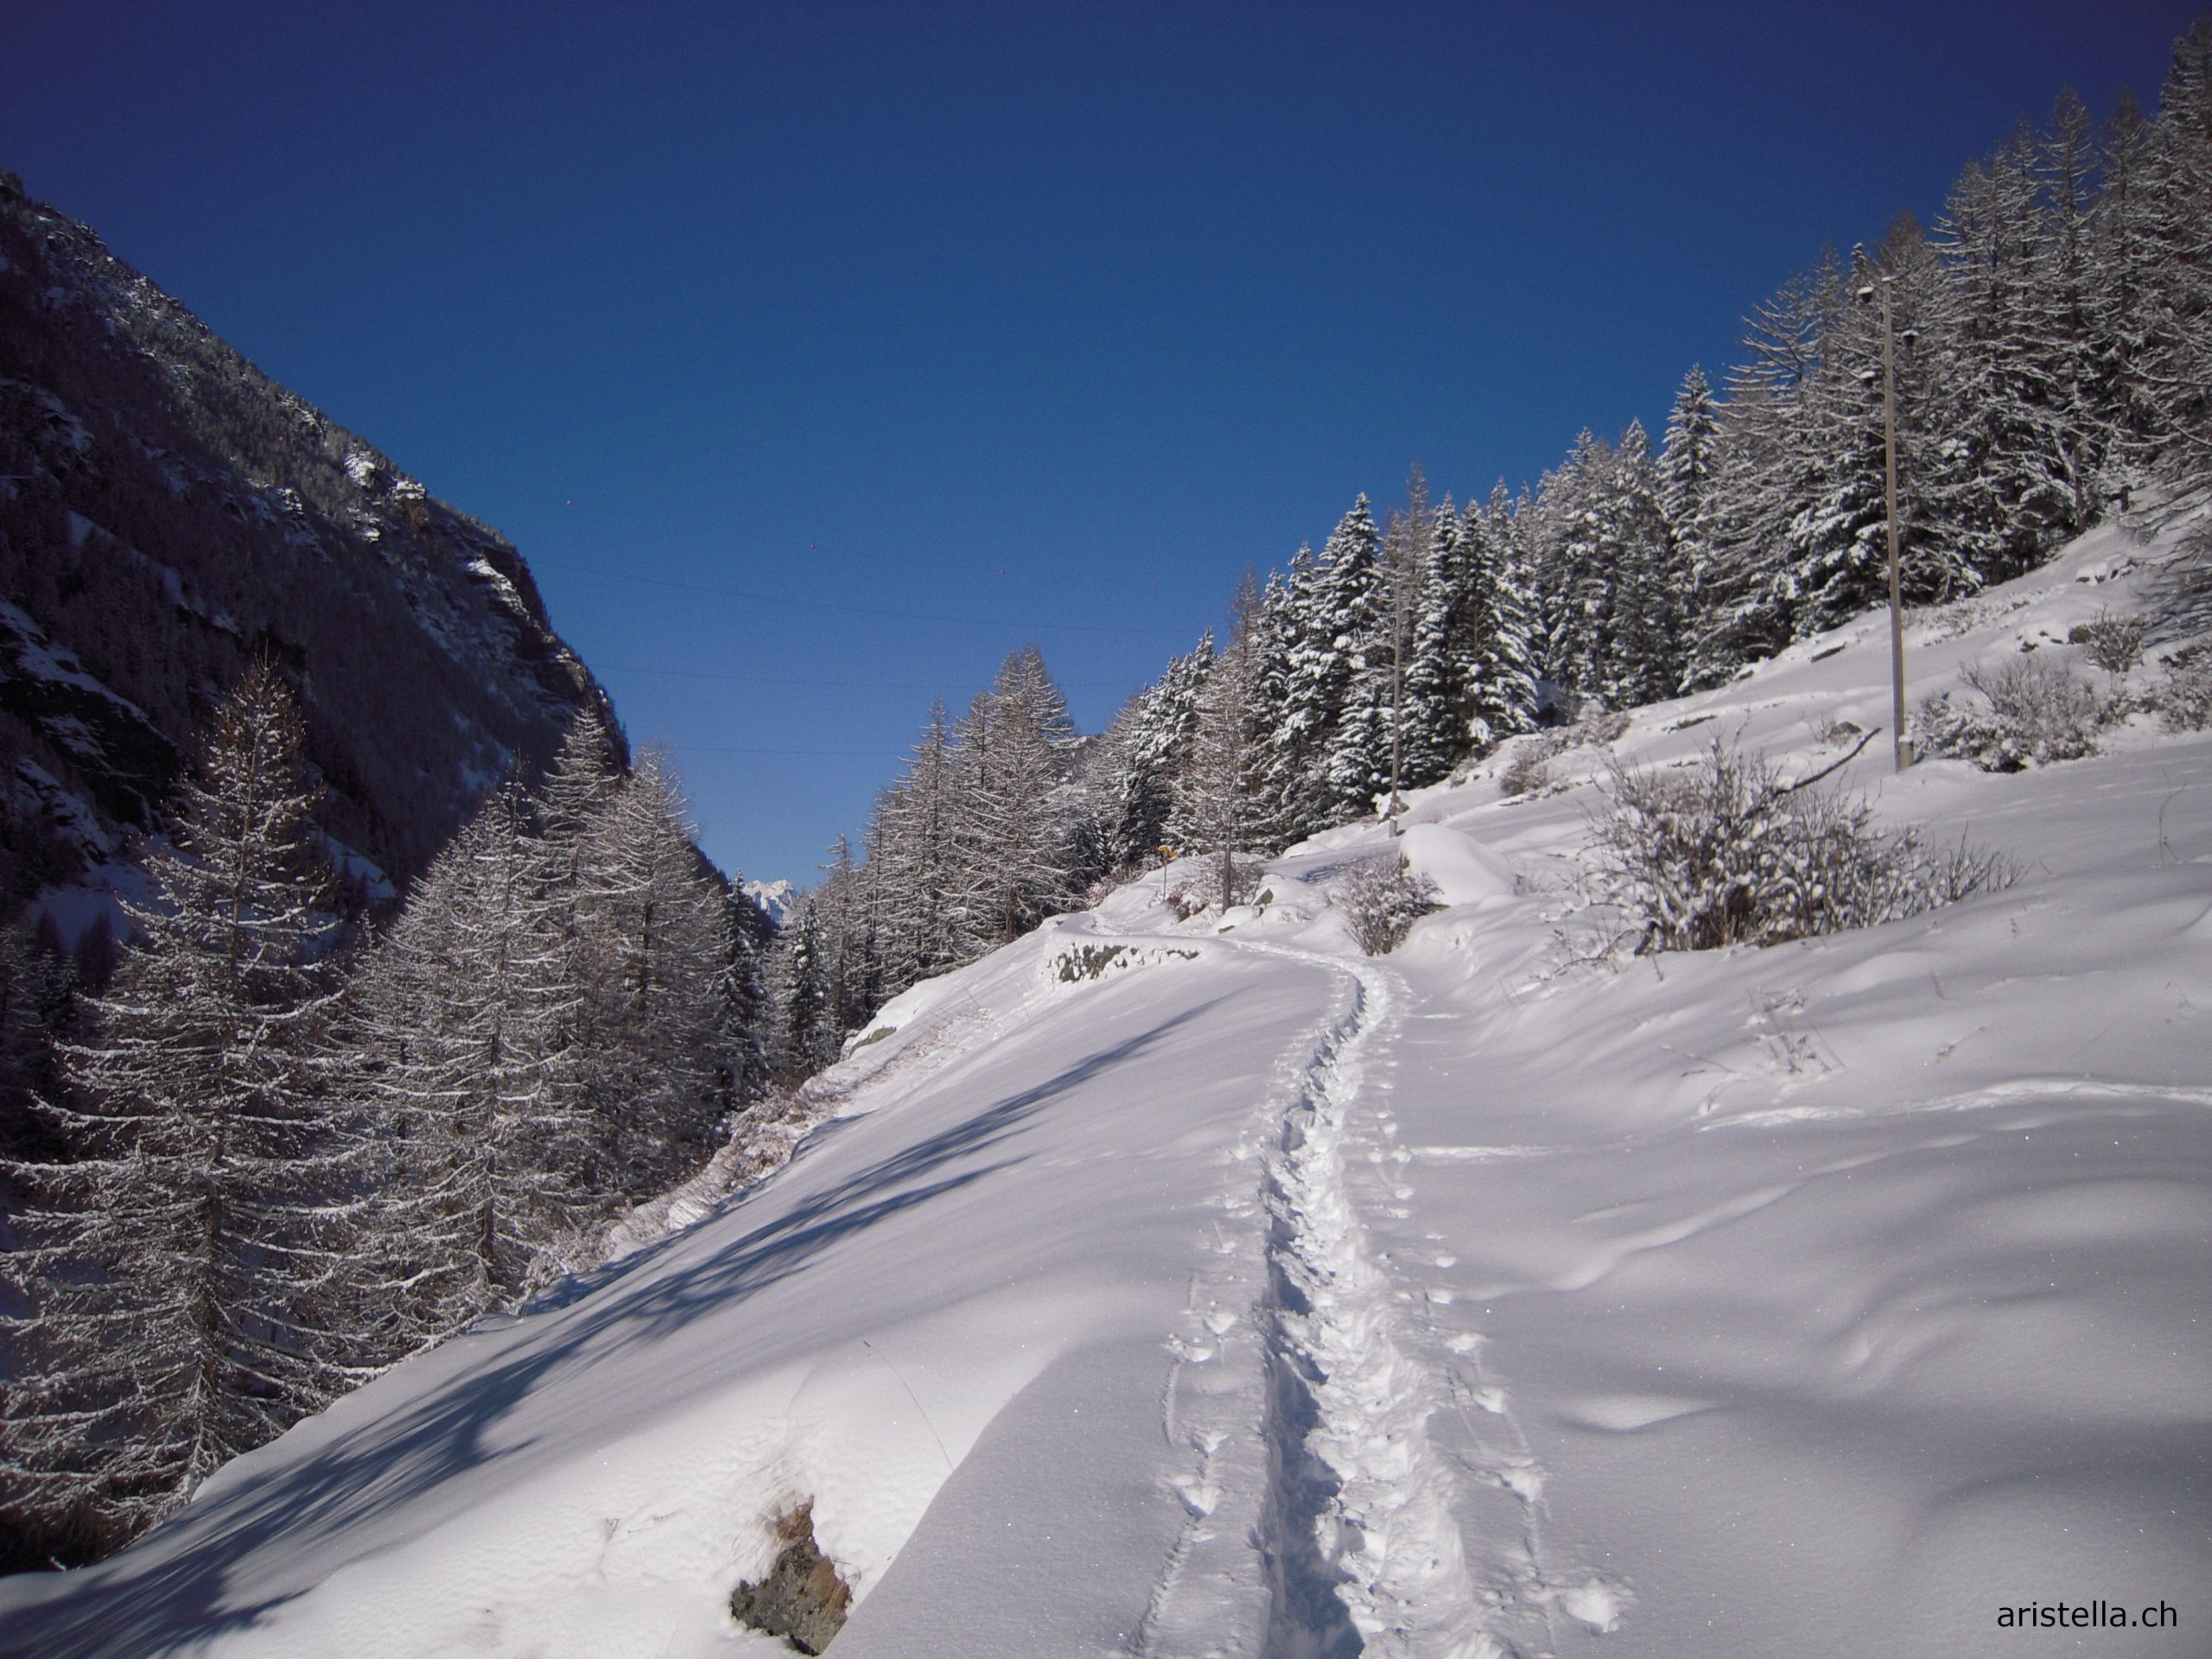 Chemin de randonnée hivernale